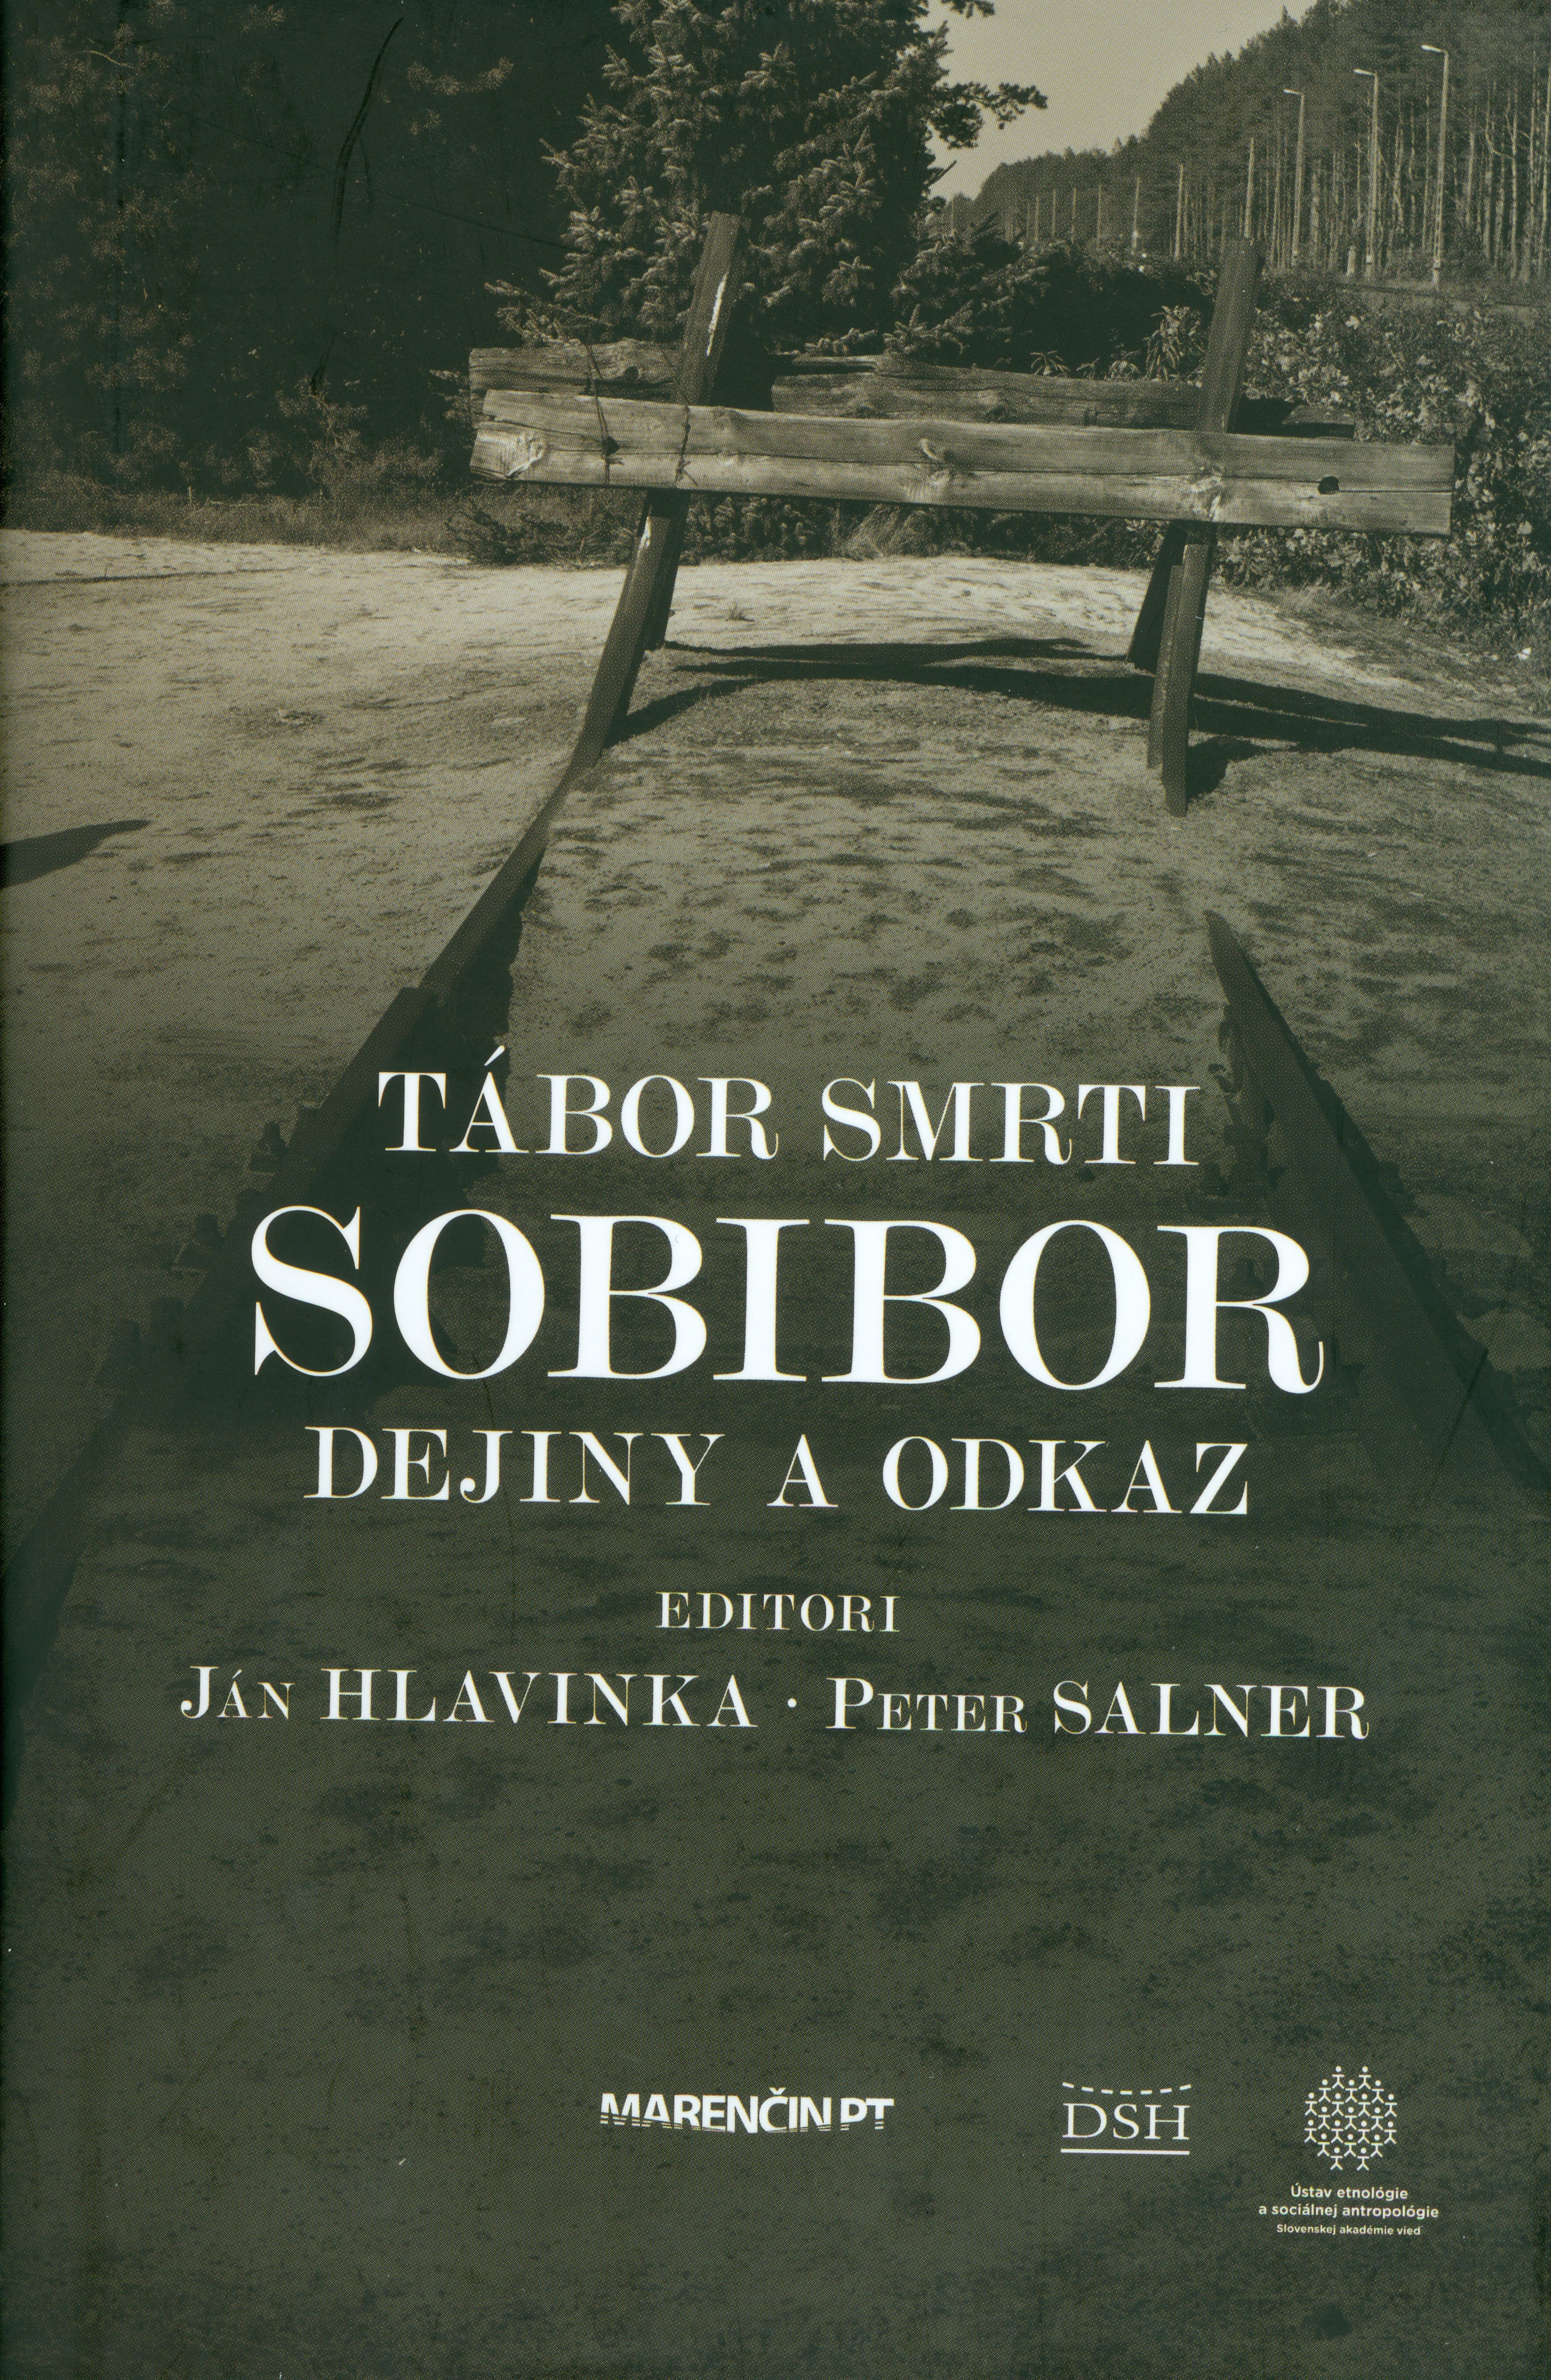 Tábor smrti Sobibor: dejiny a odkaz